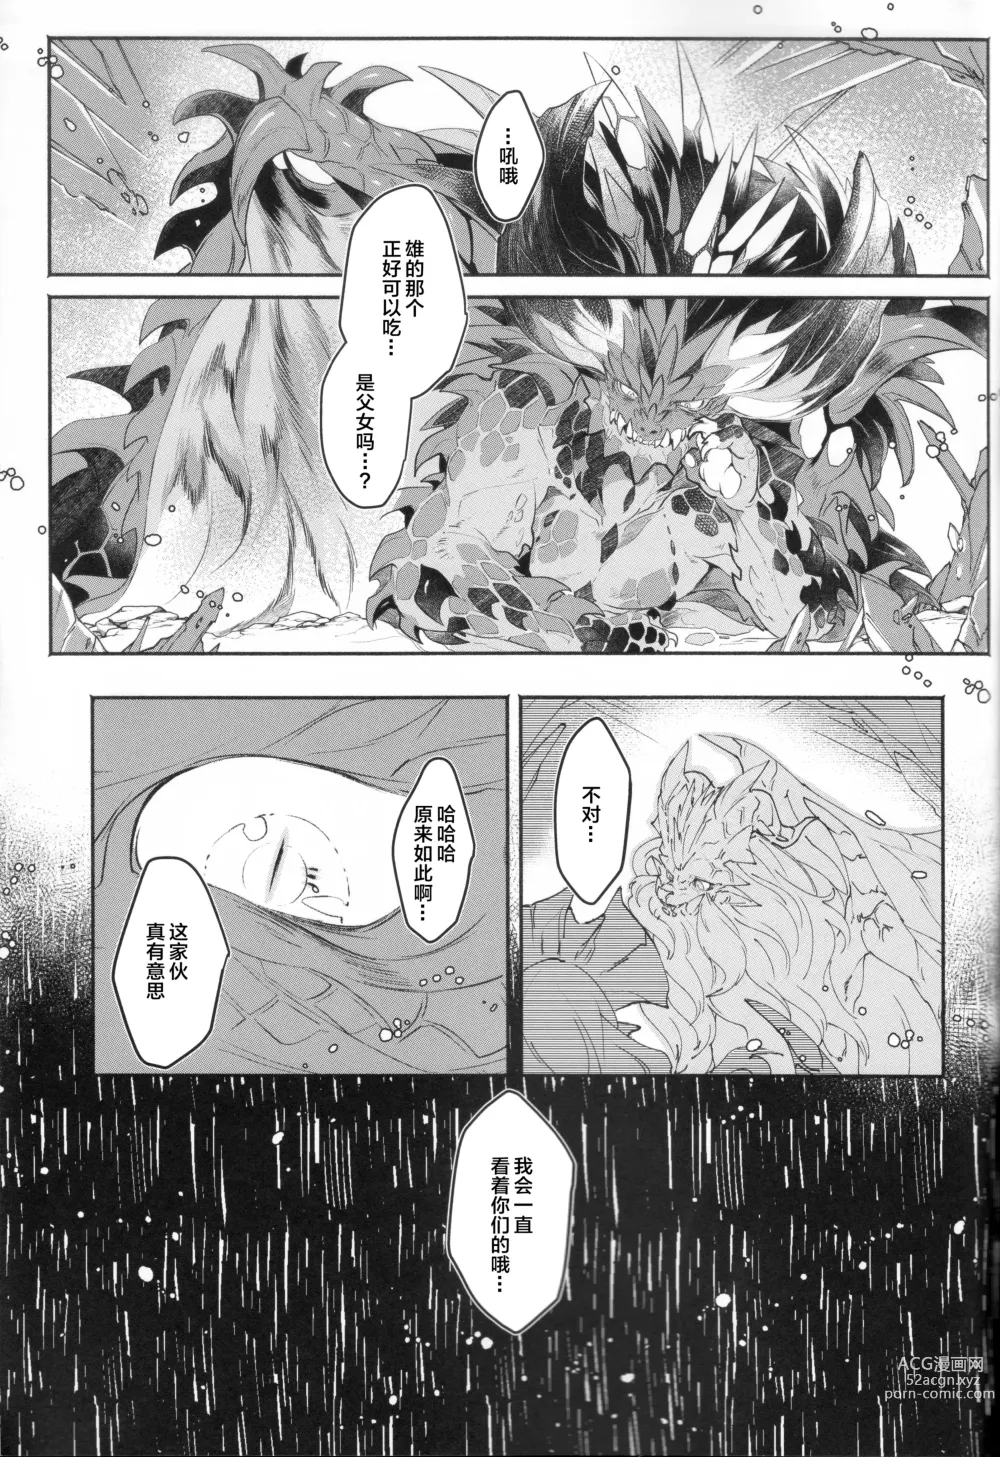 Page 51 of doujinshi VALSE